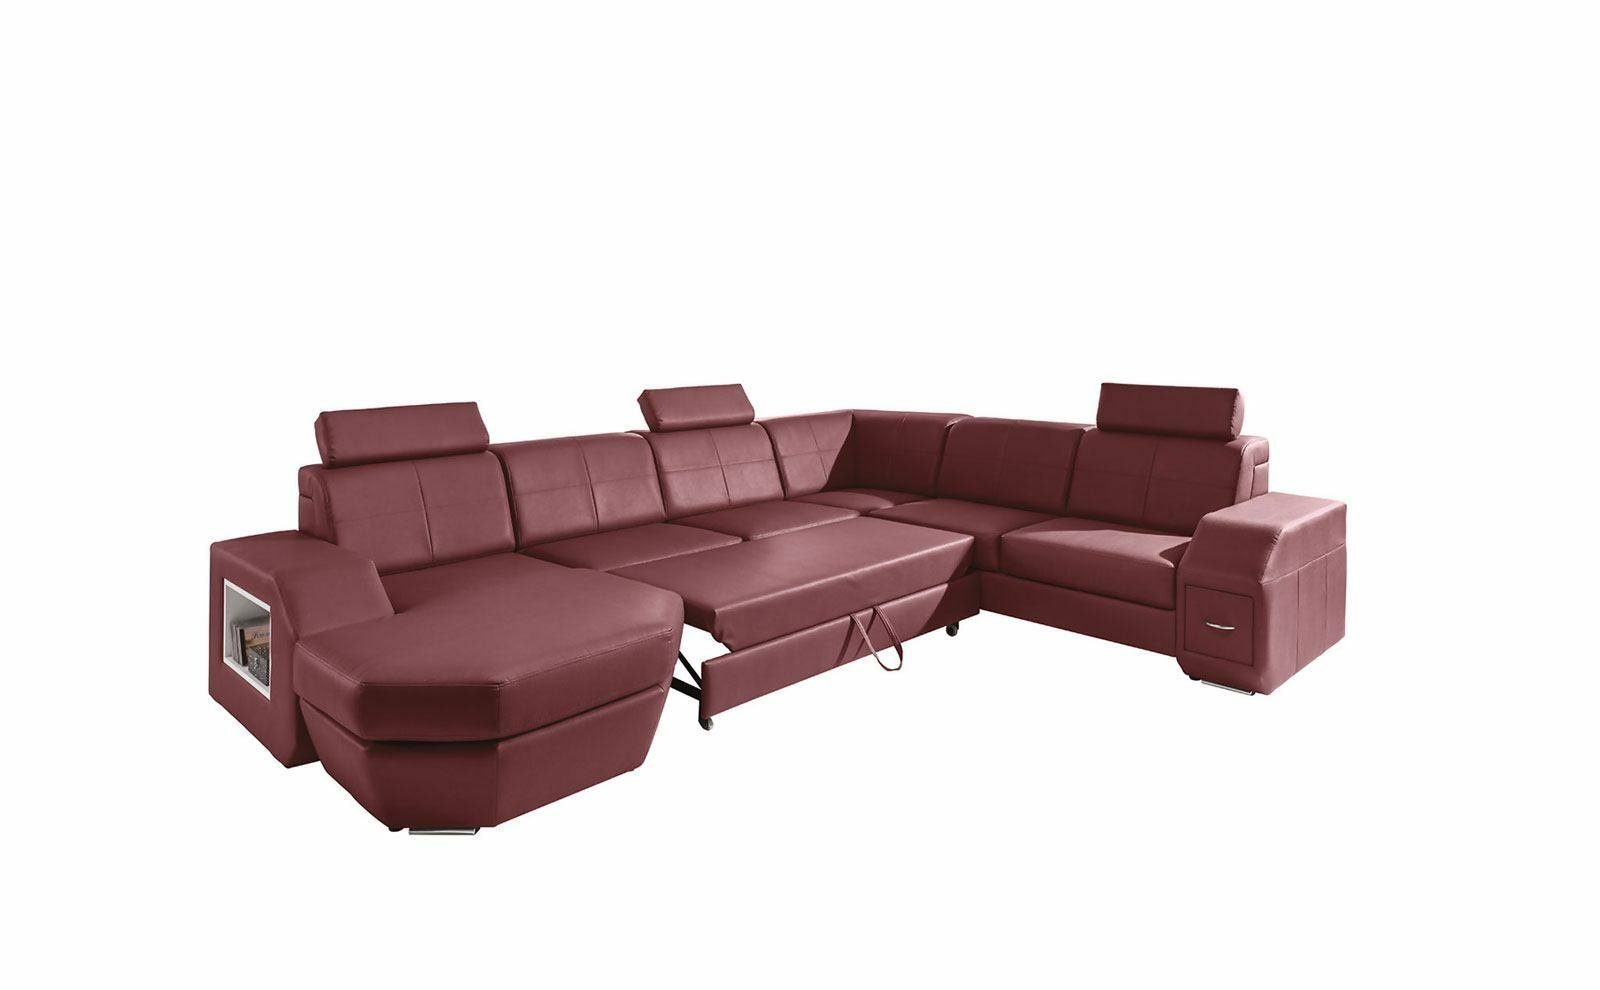 JVmoebel Ecksofa, Edle Design Sofas Couch Polster Eck Wohnlandschaft Couchen Garnitur